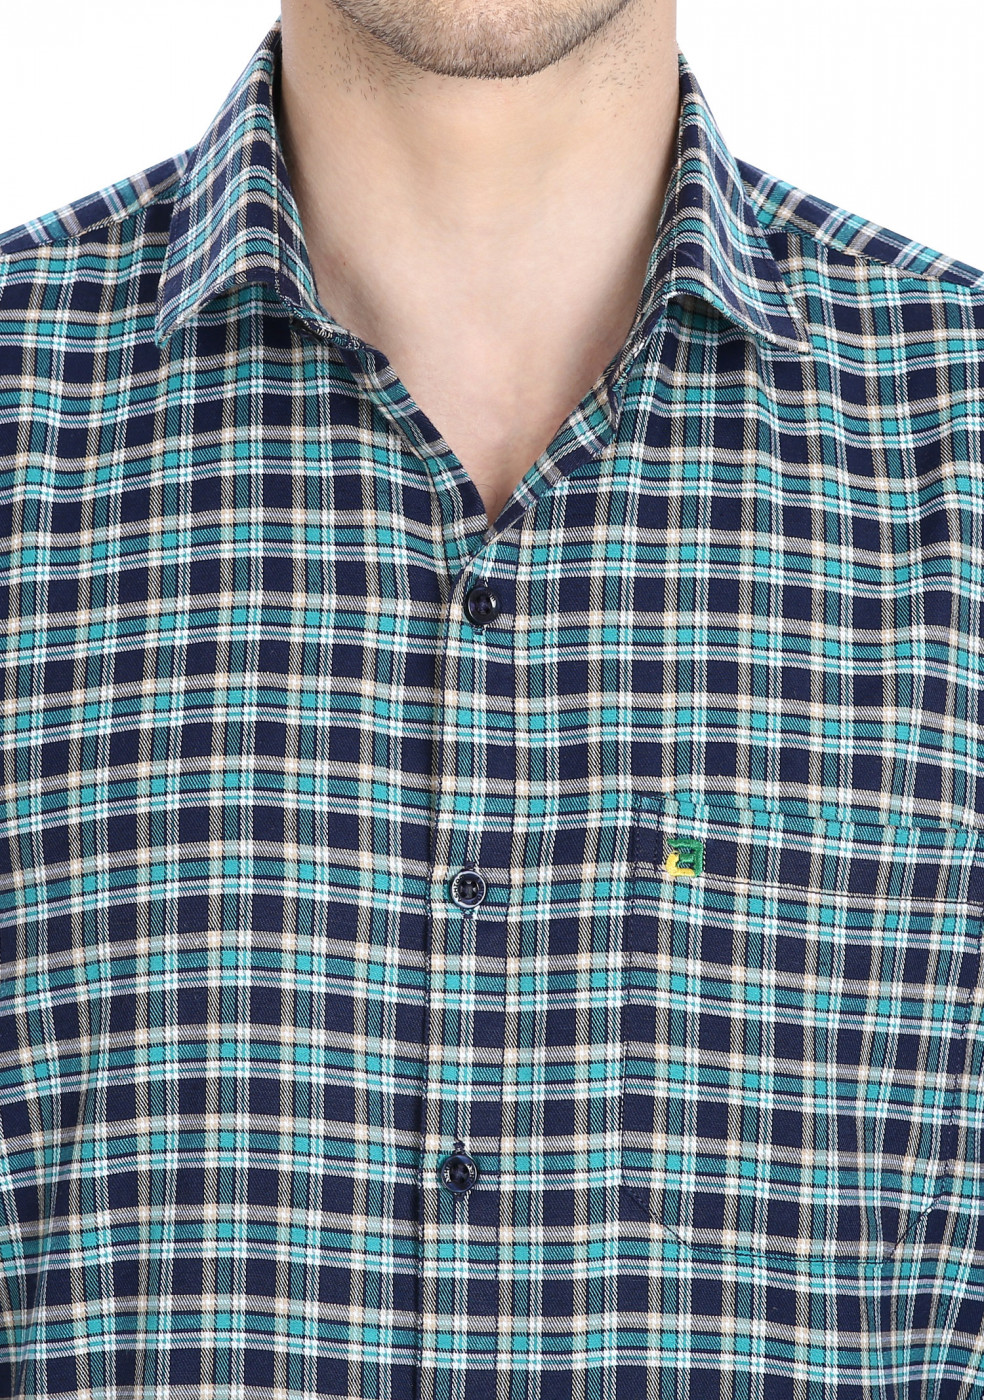 Green Blue Swiss Cotton Check Shirt For Men